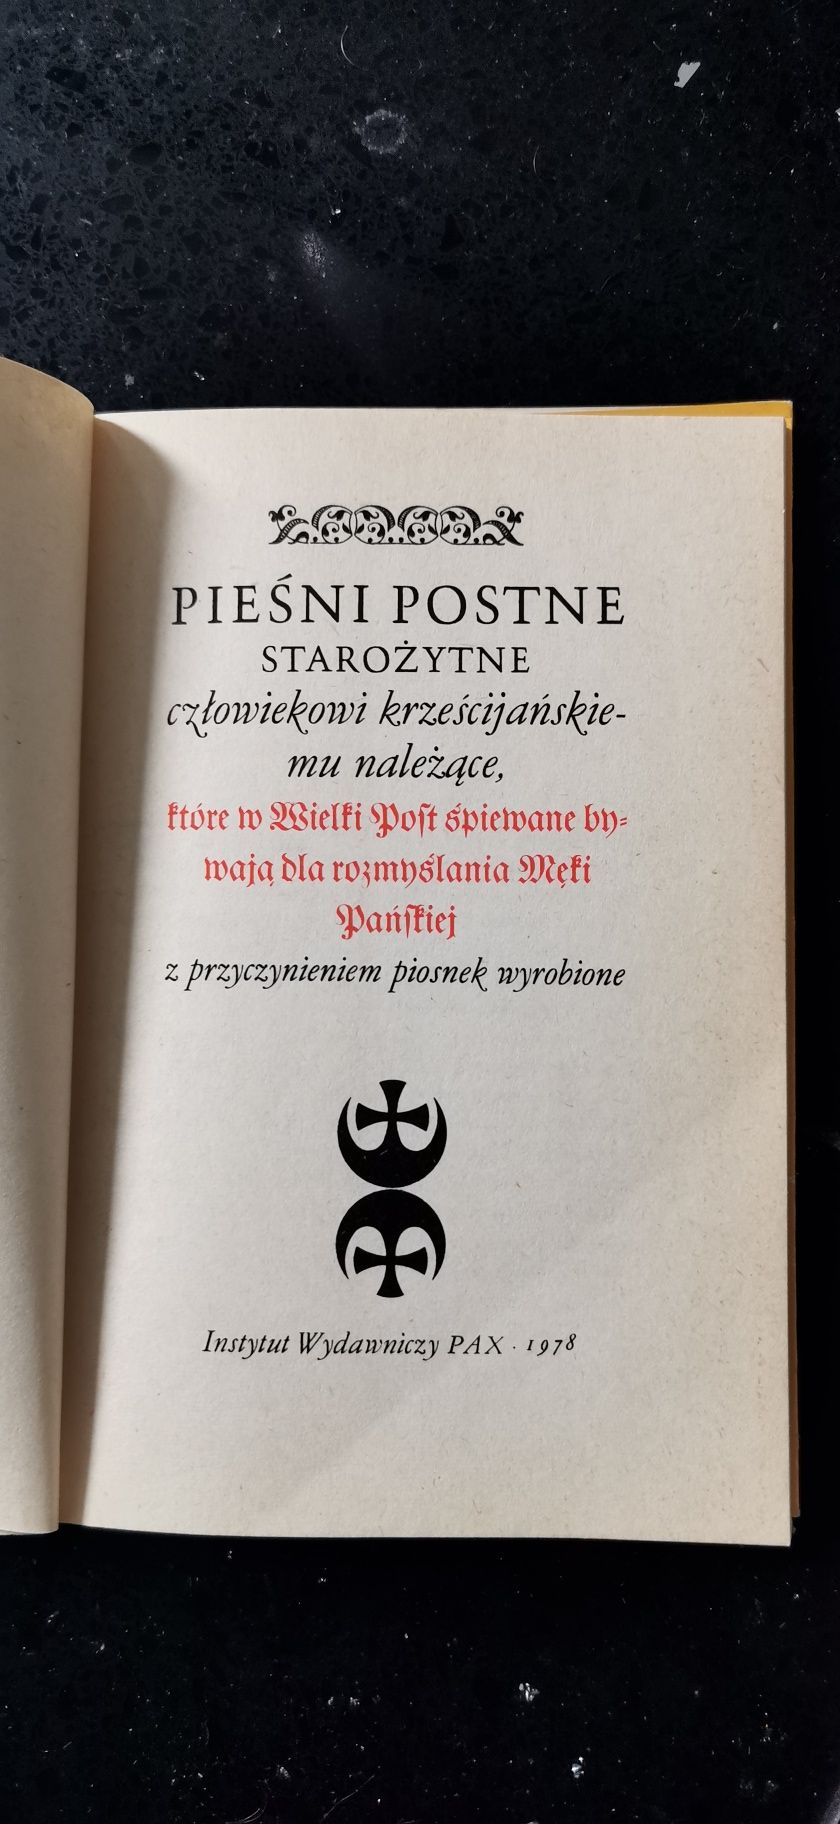 Pieśni postne starożytne Reprint z 1607 r.
Praca Zbiorowa